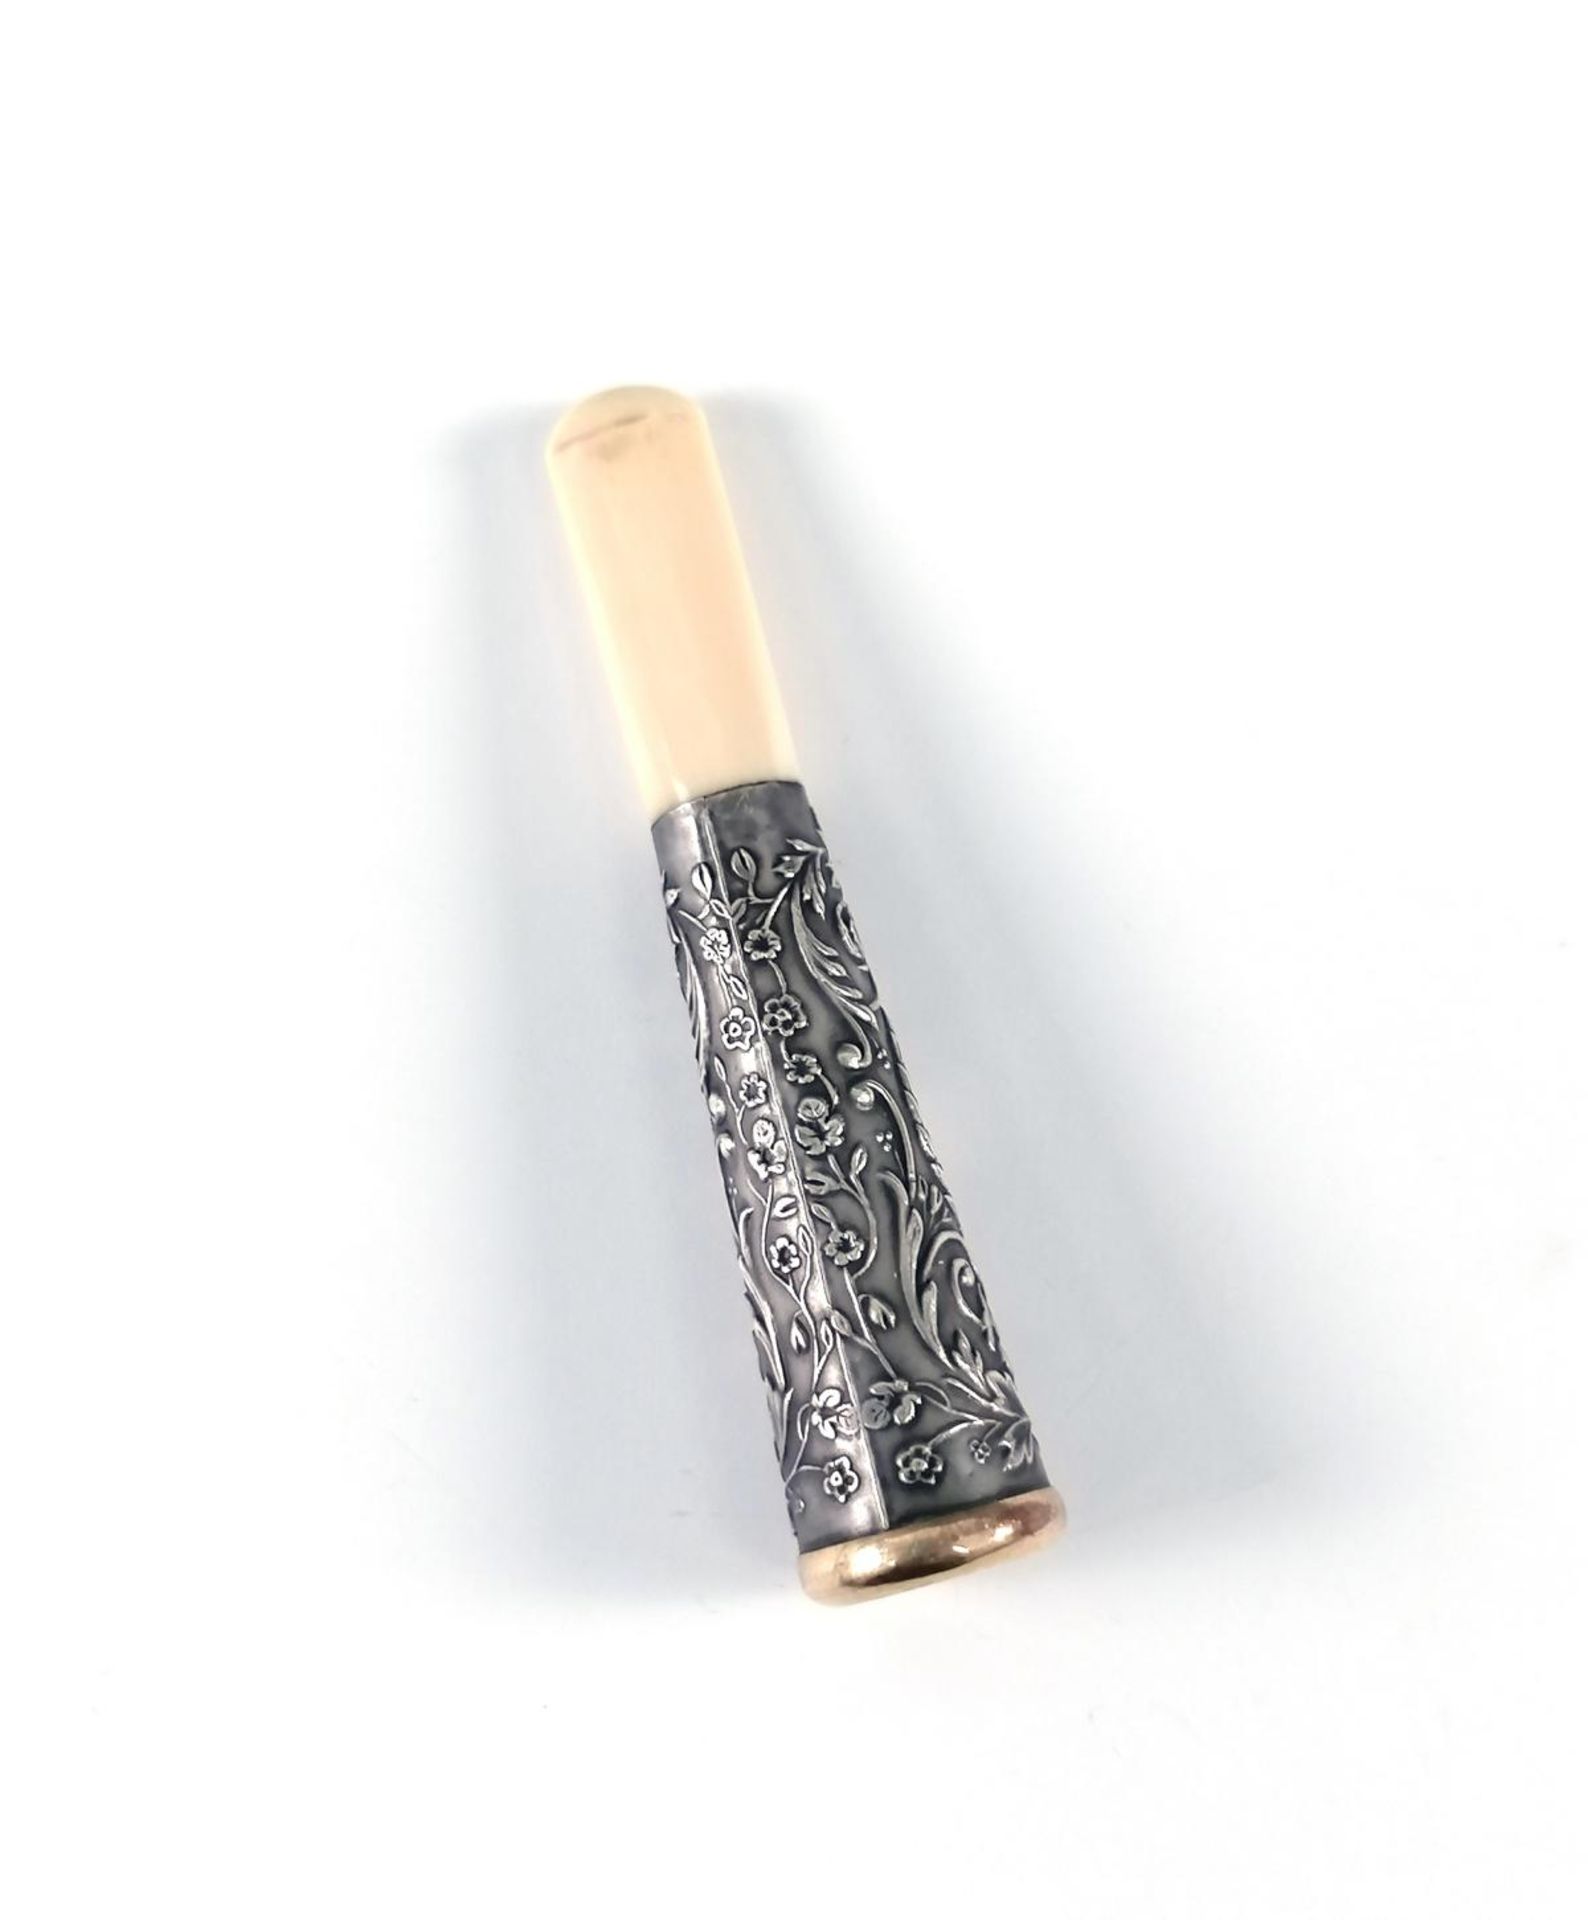 Mundstück für Zigarren aus Elfenbein, Silber und Gold, 19. Jh. - Bild 2 aus 2